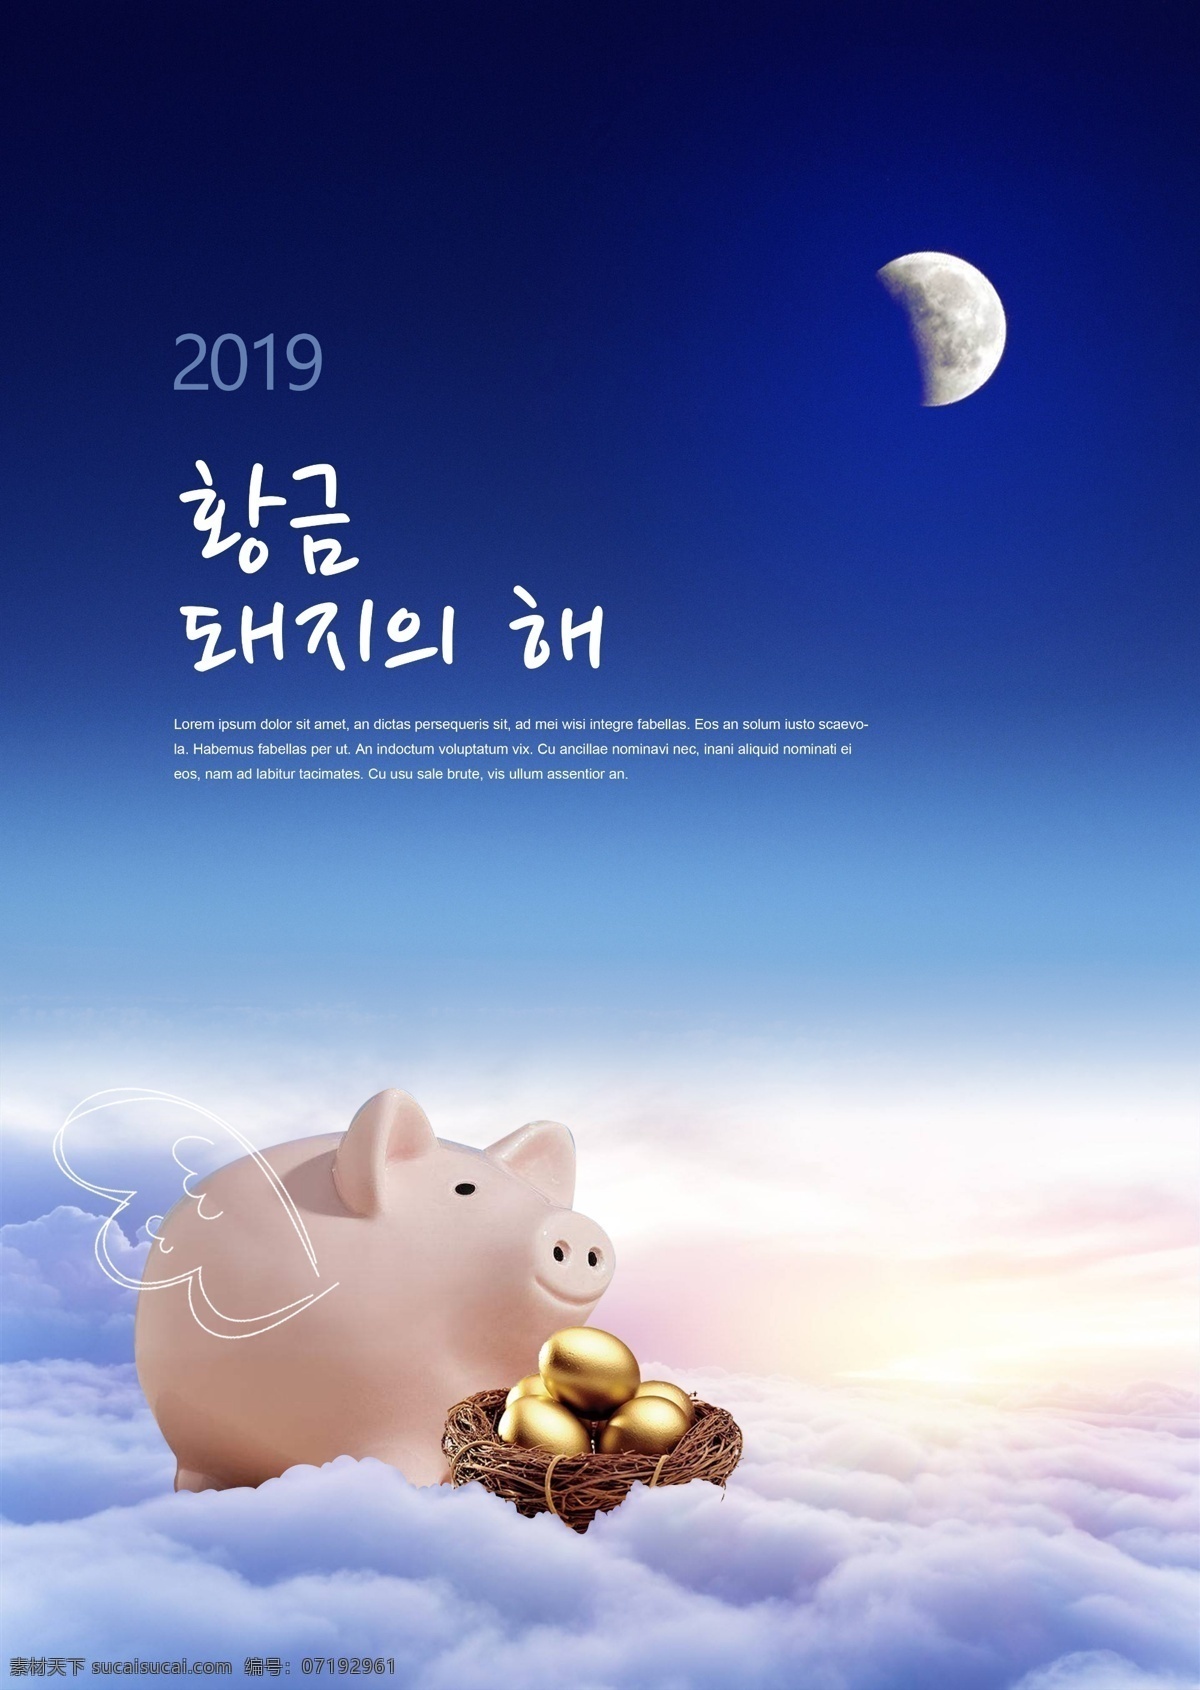 现代 蓝色 时尚 2019 年 新年 海报 云 猪 新的一年 天空 韩国 杨林 硬币 月亮 可爱